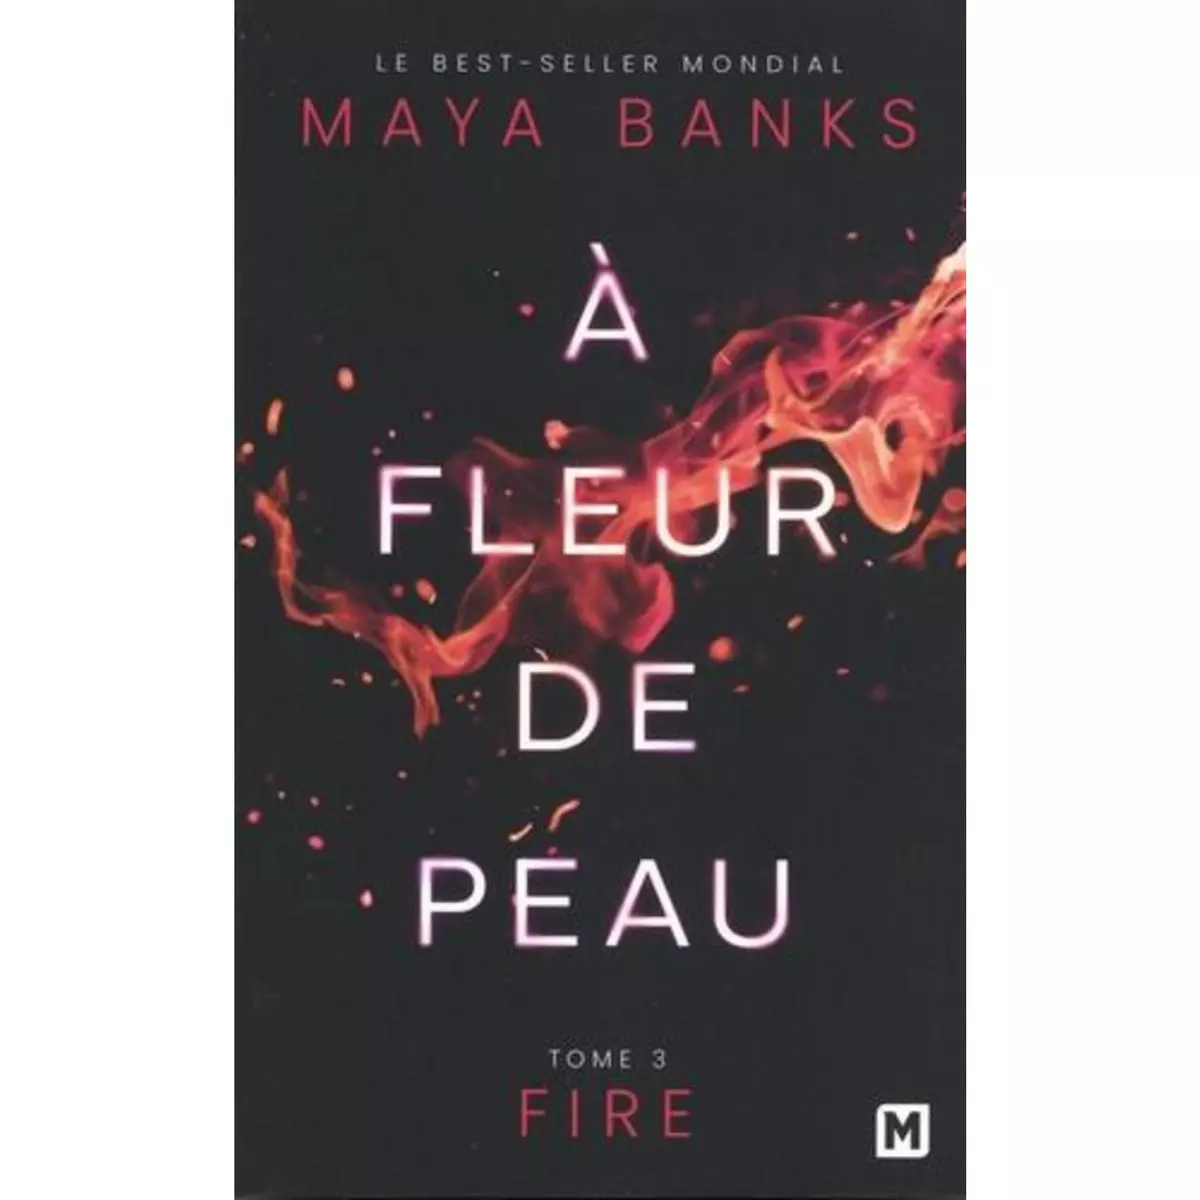  A FLEUR DE PEAU TOME 3 : FIRE, Banks Maya